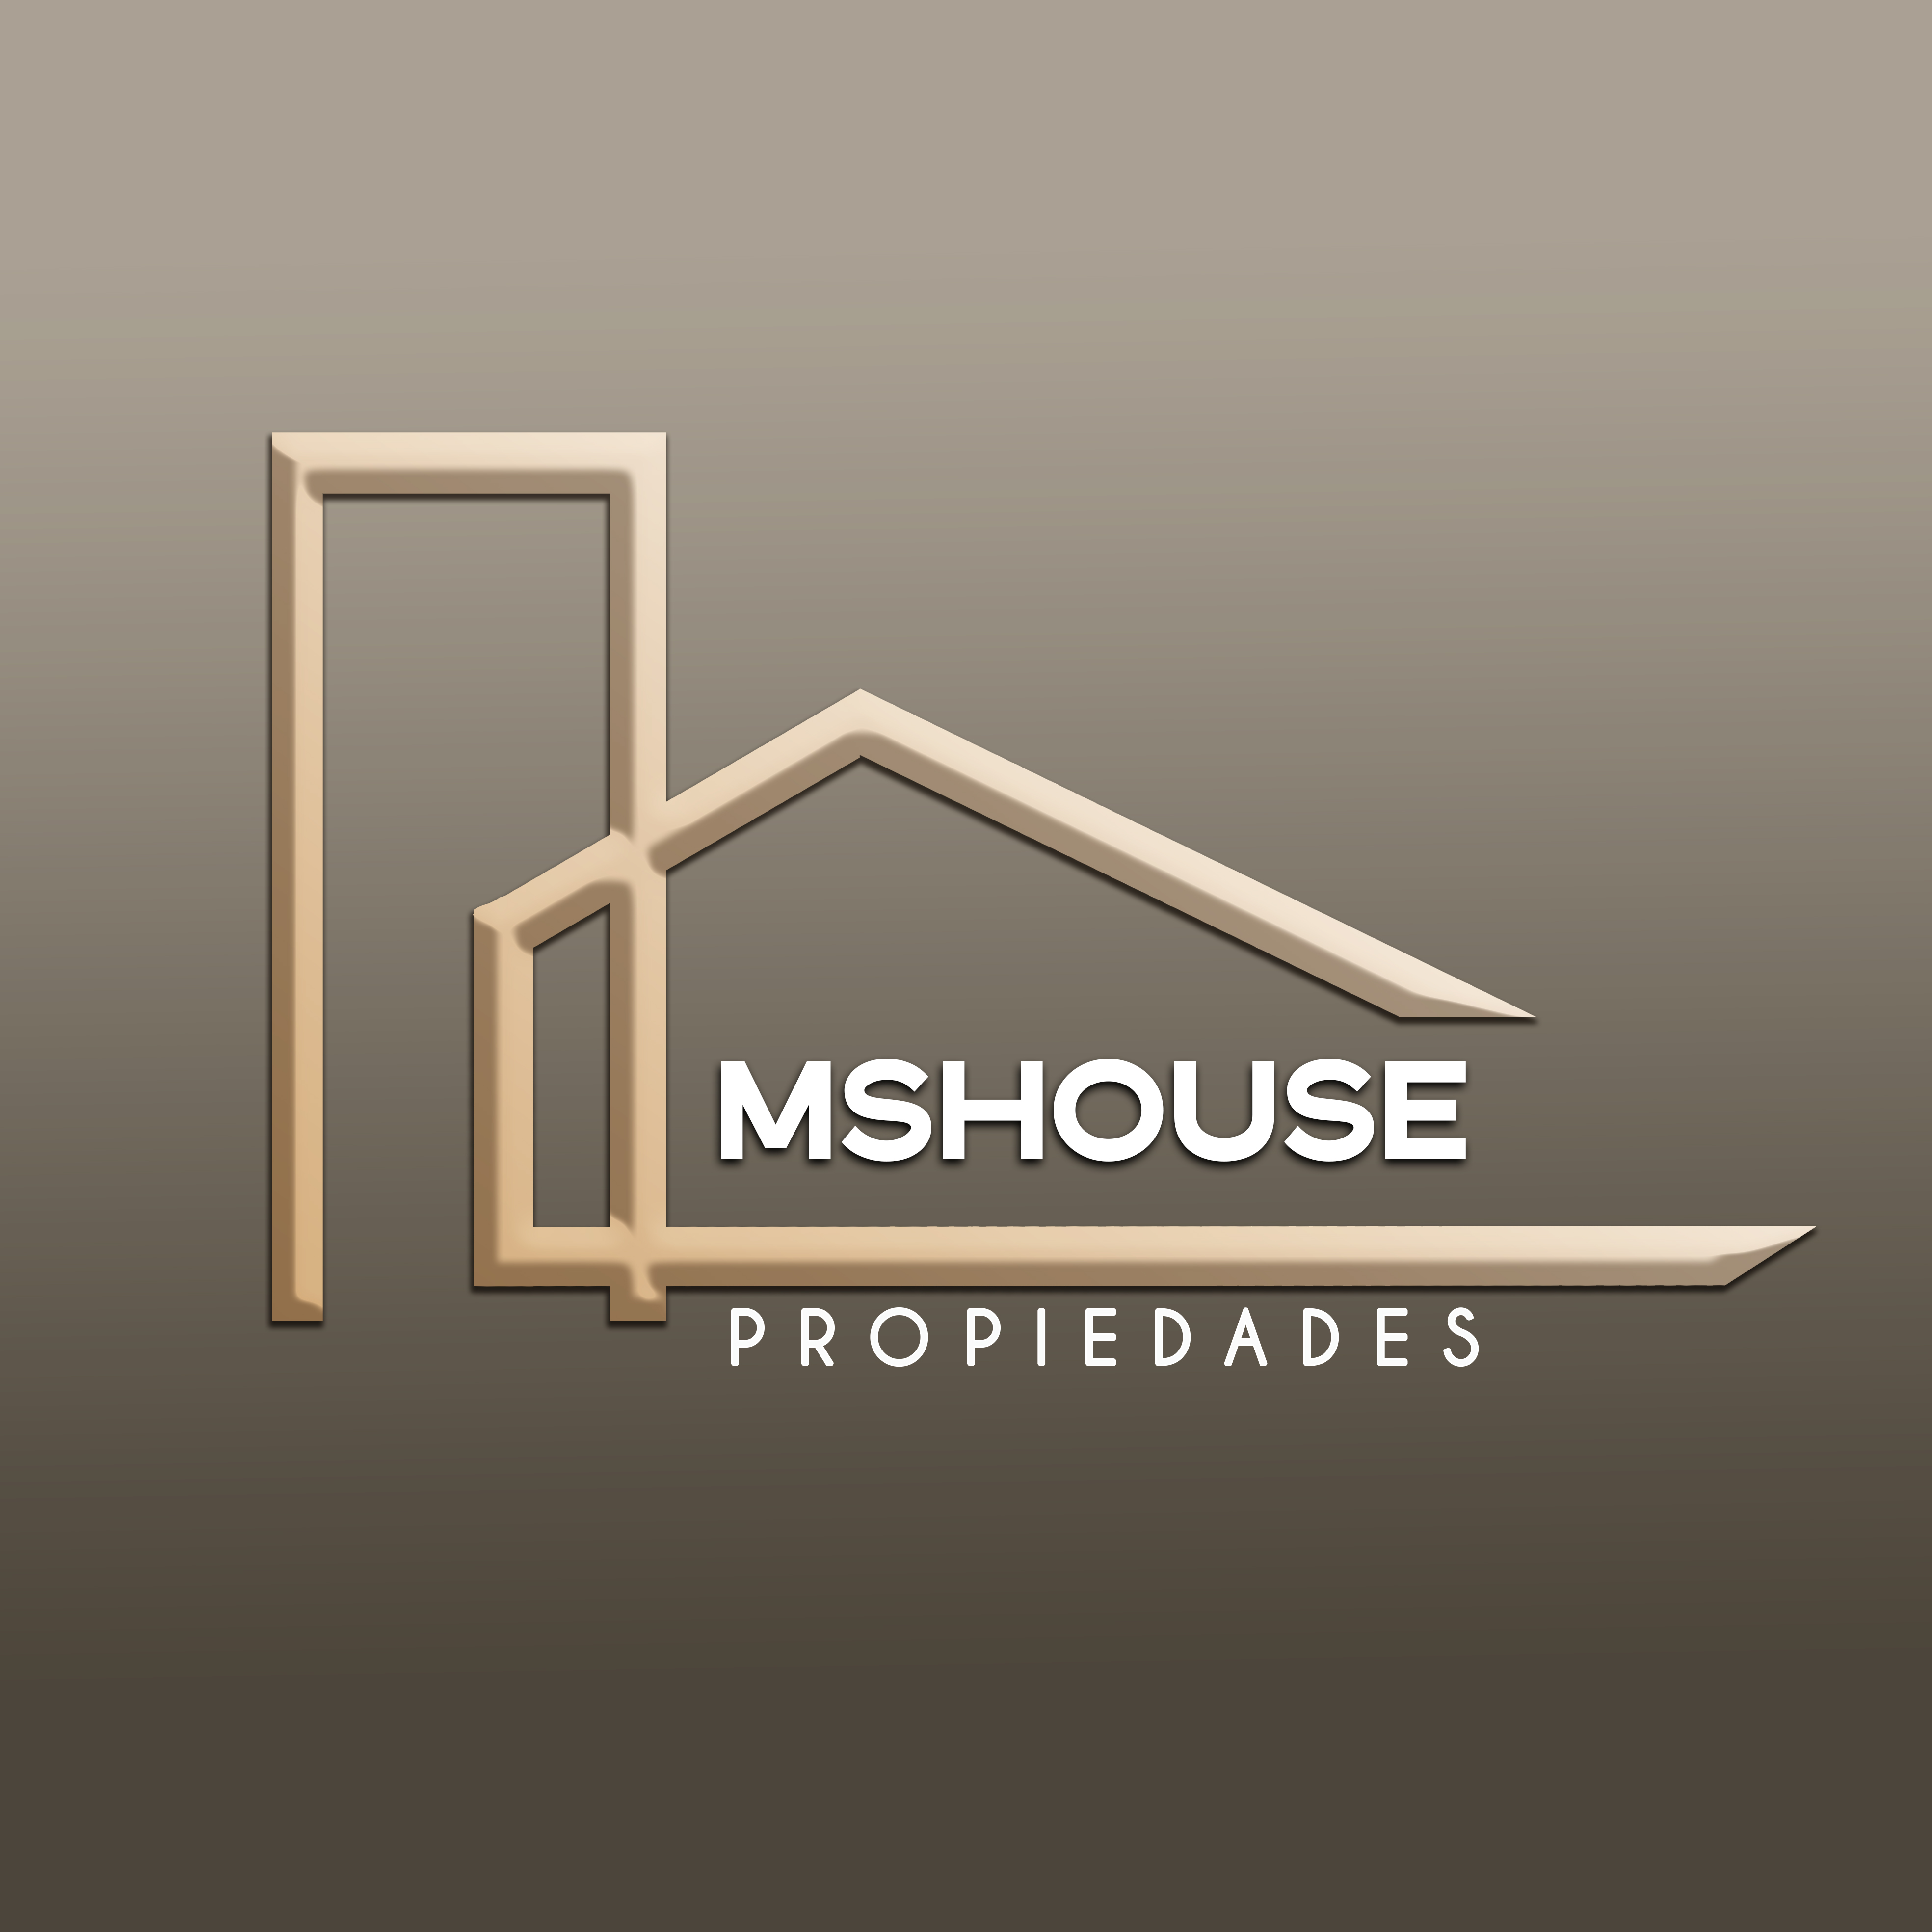 MS HOUSE PROPIEDADES logo